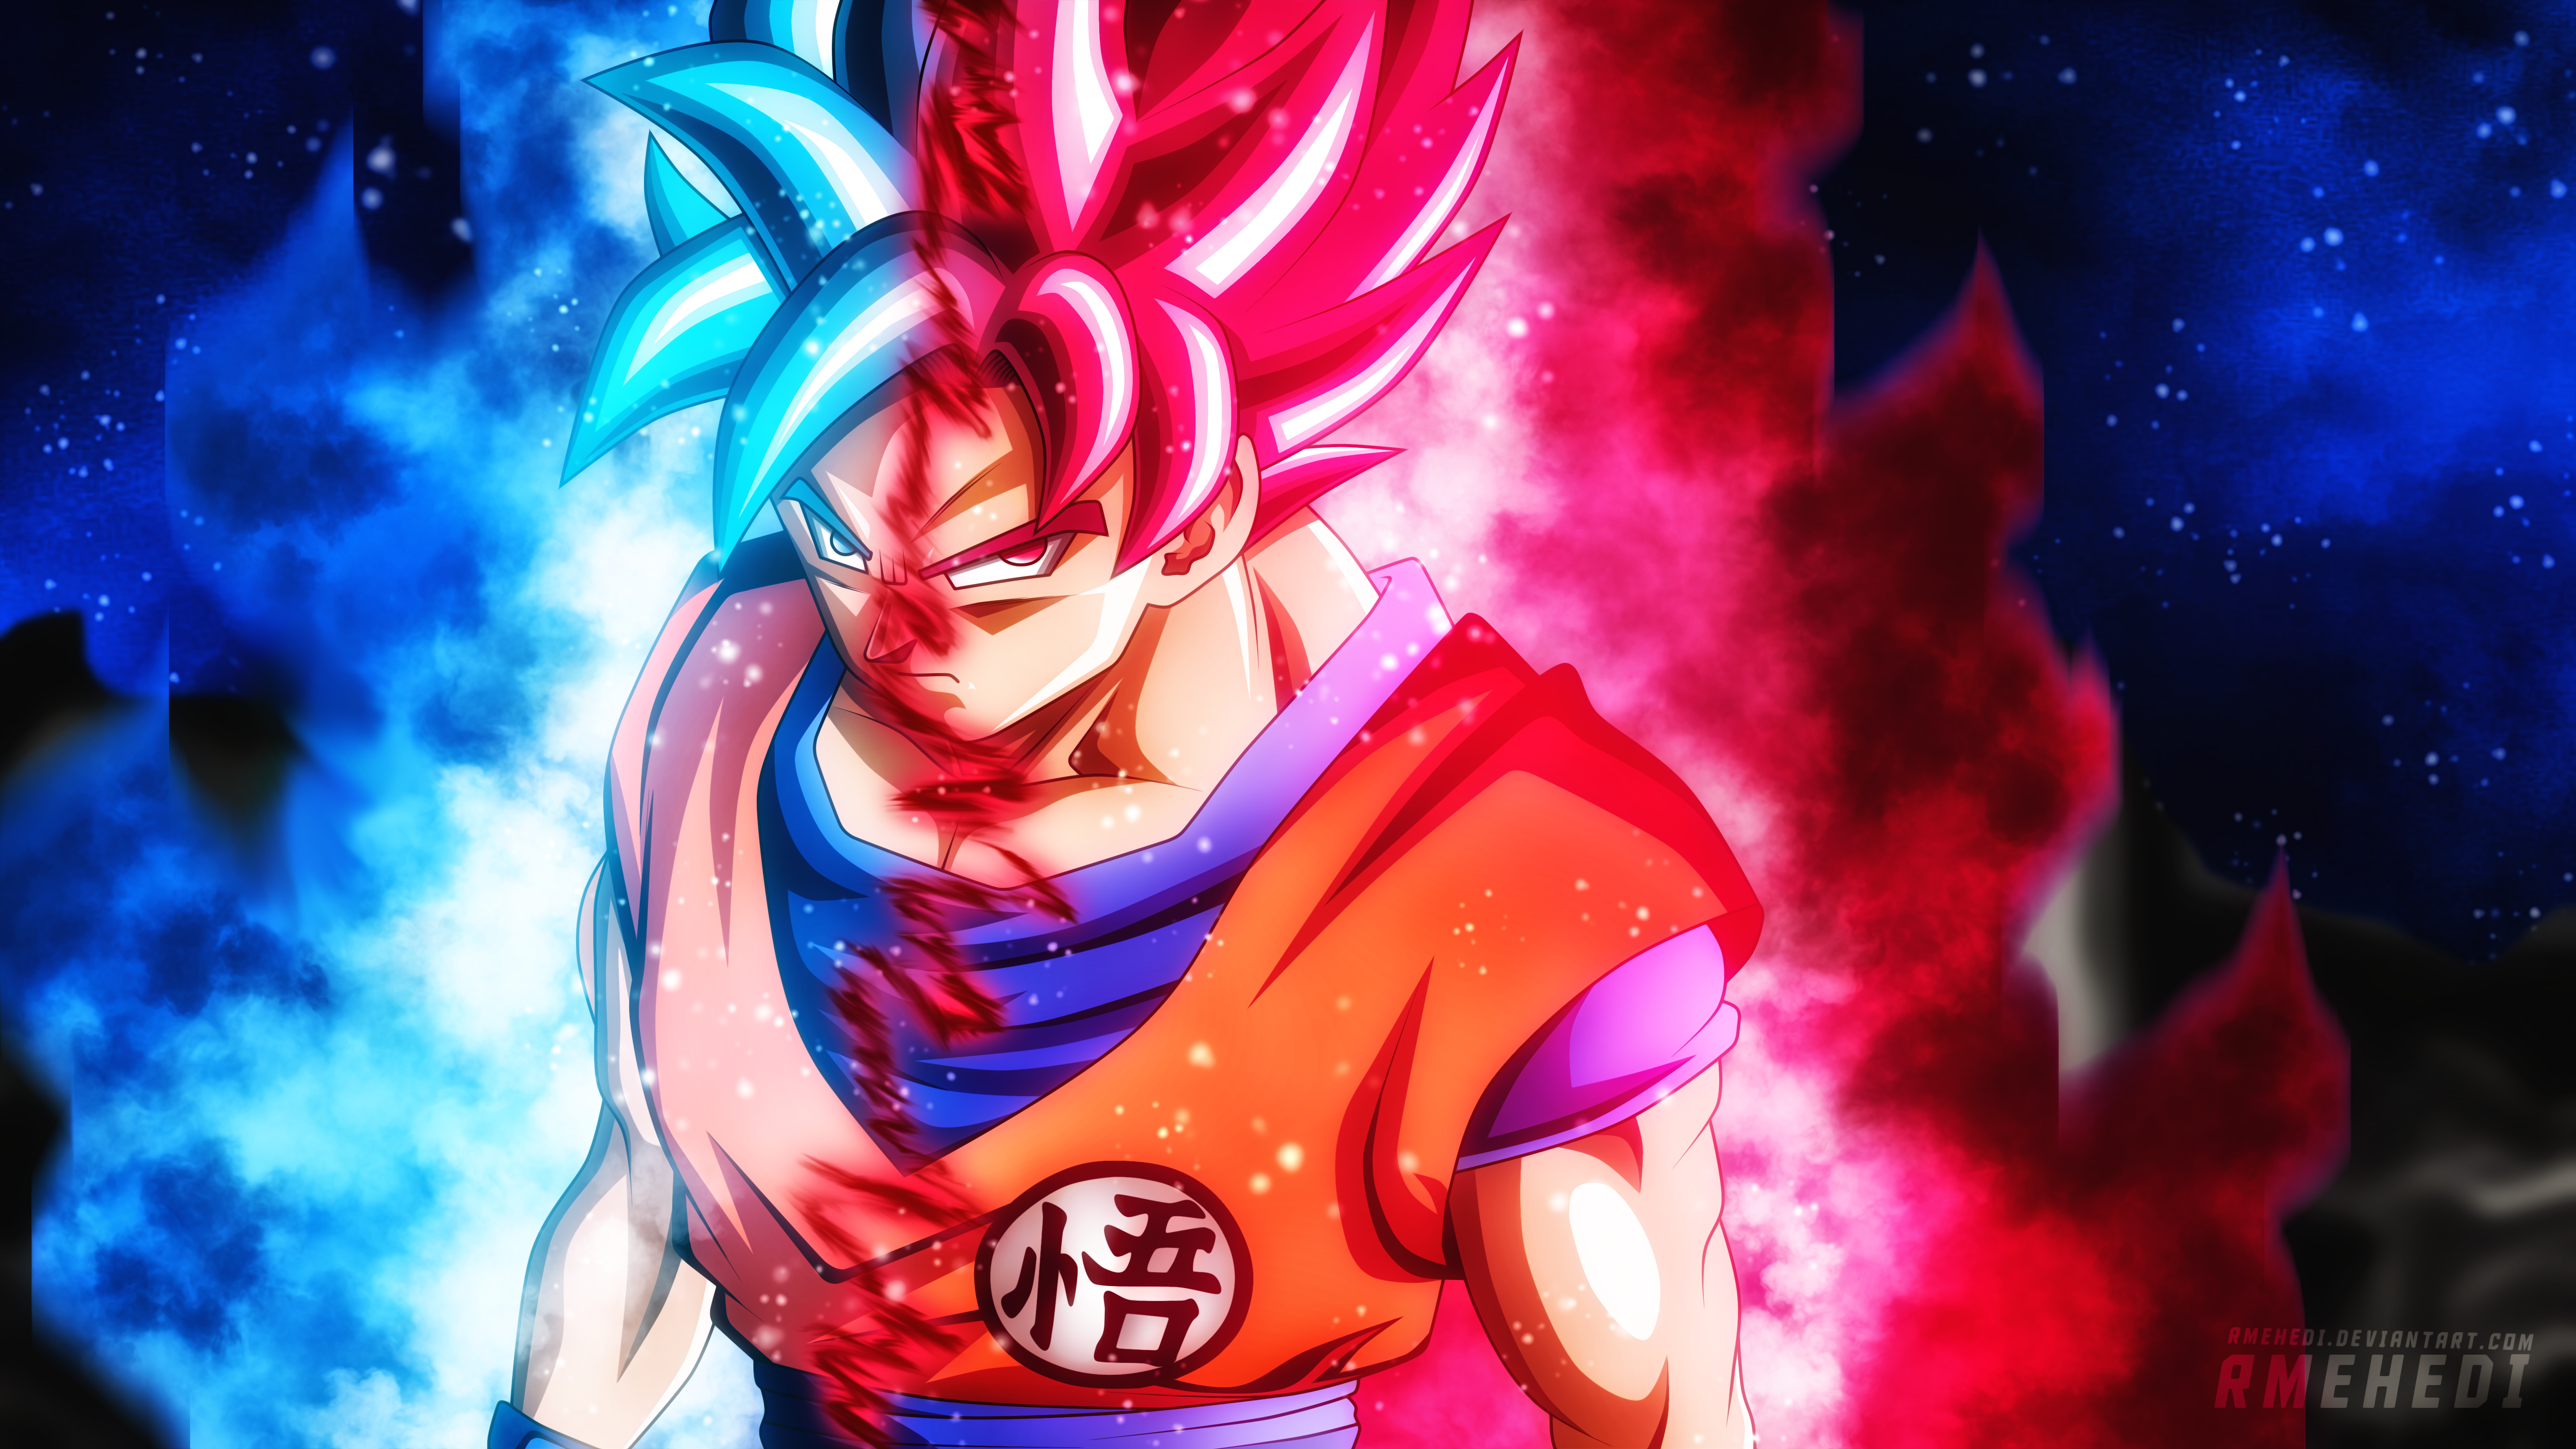 Anime Dragon Ball Super 4k Ultra HD Wallpaper by Sadman Sakib